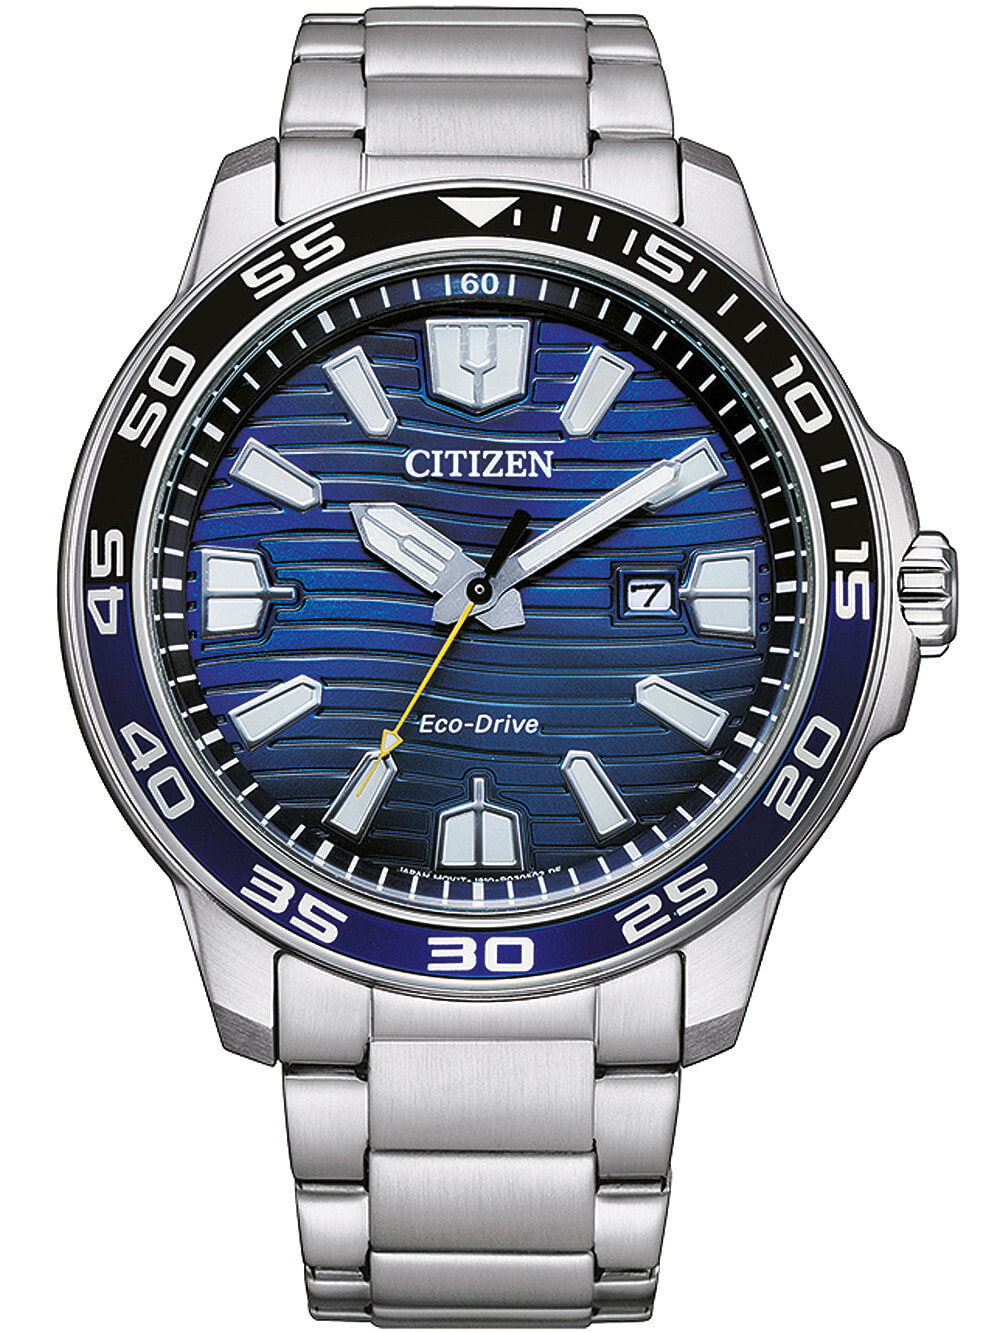 Мужские наручные часы с серебряным браслетом Citizen AW1525-81L Eco-Drive sport mens 46mm 10ATM